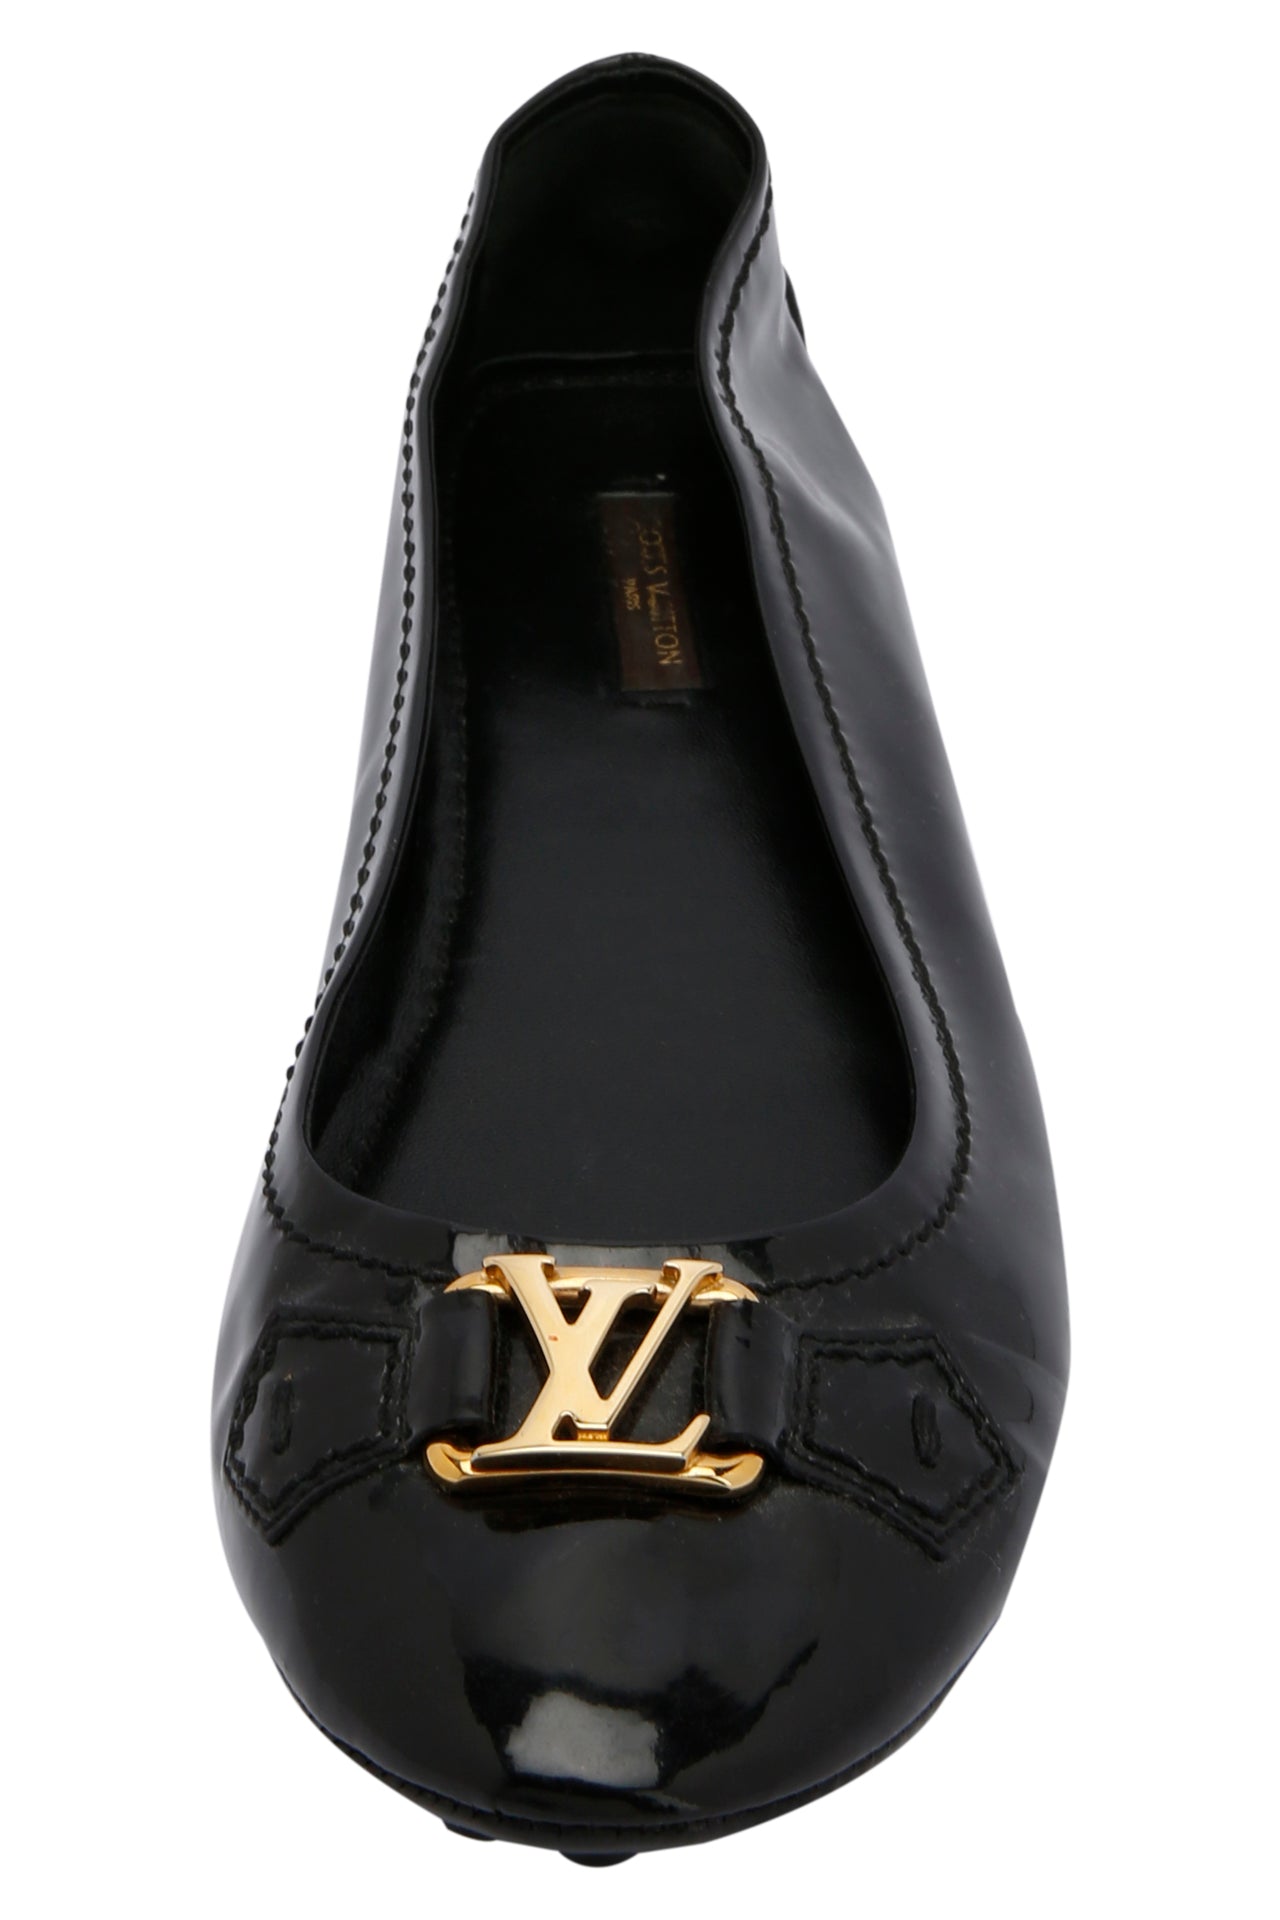 Louis Vuitton Black Vernis Leather Oxford Ballet Flats EU 39.5